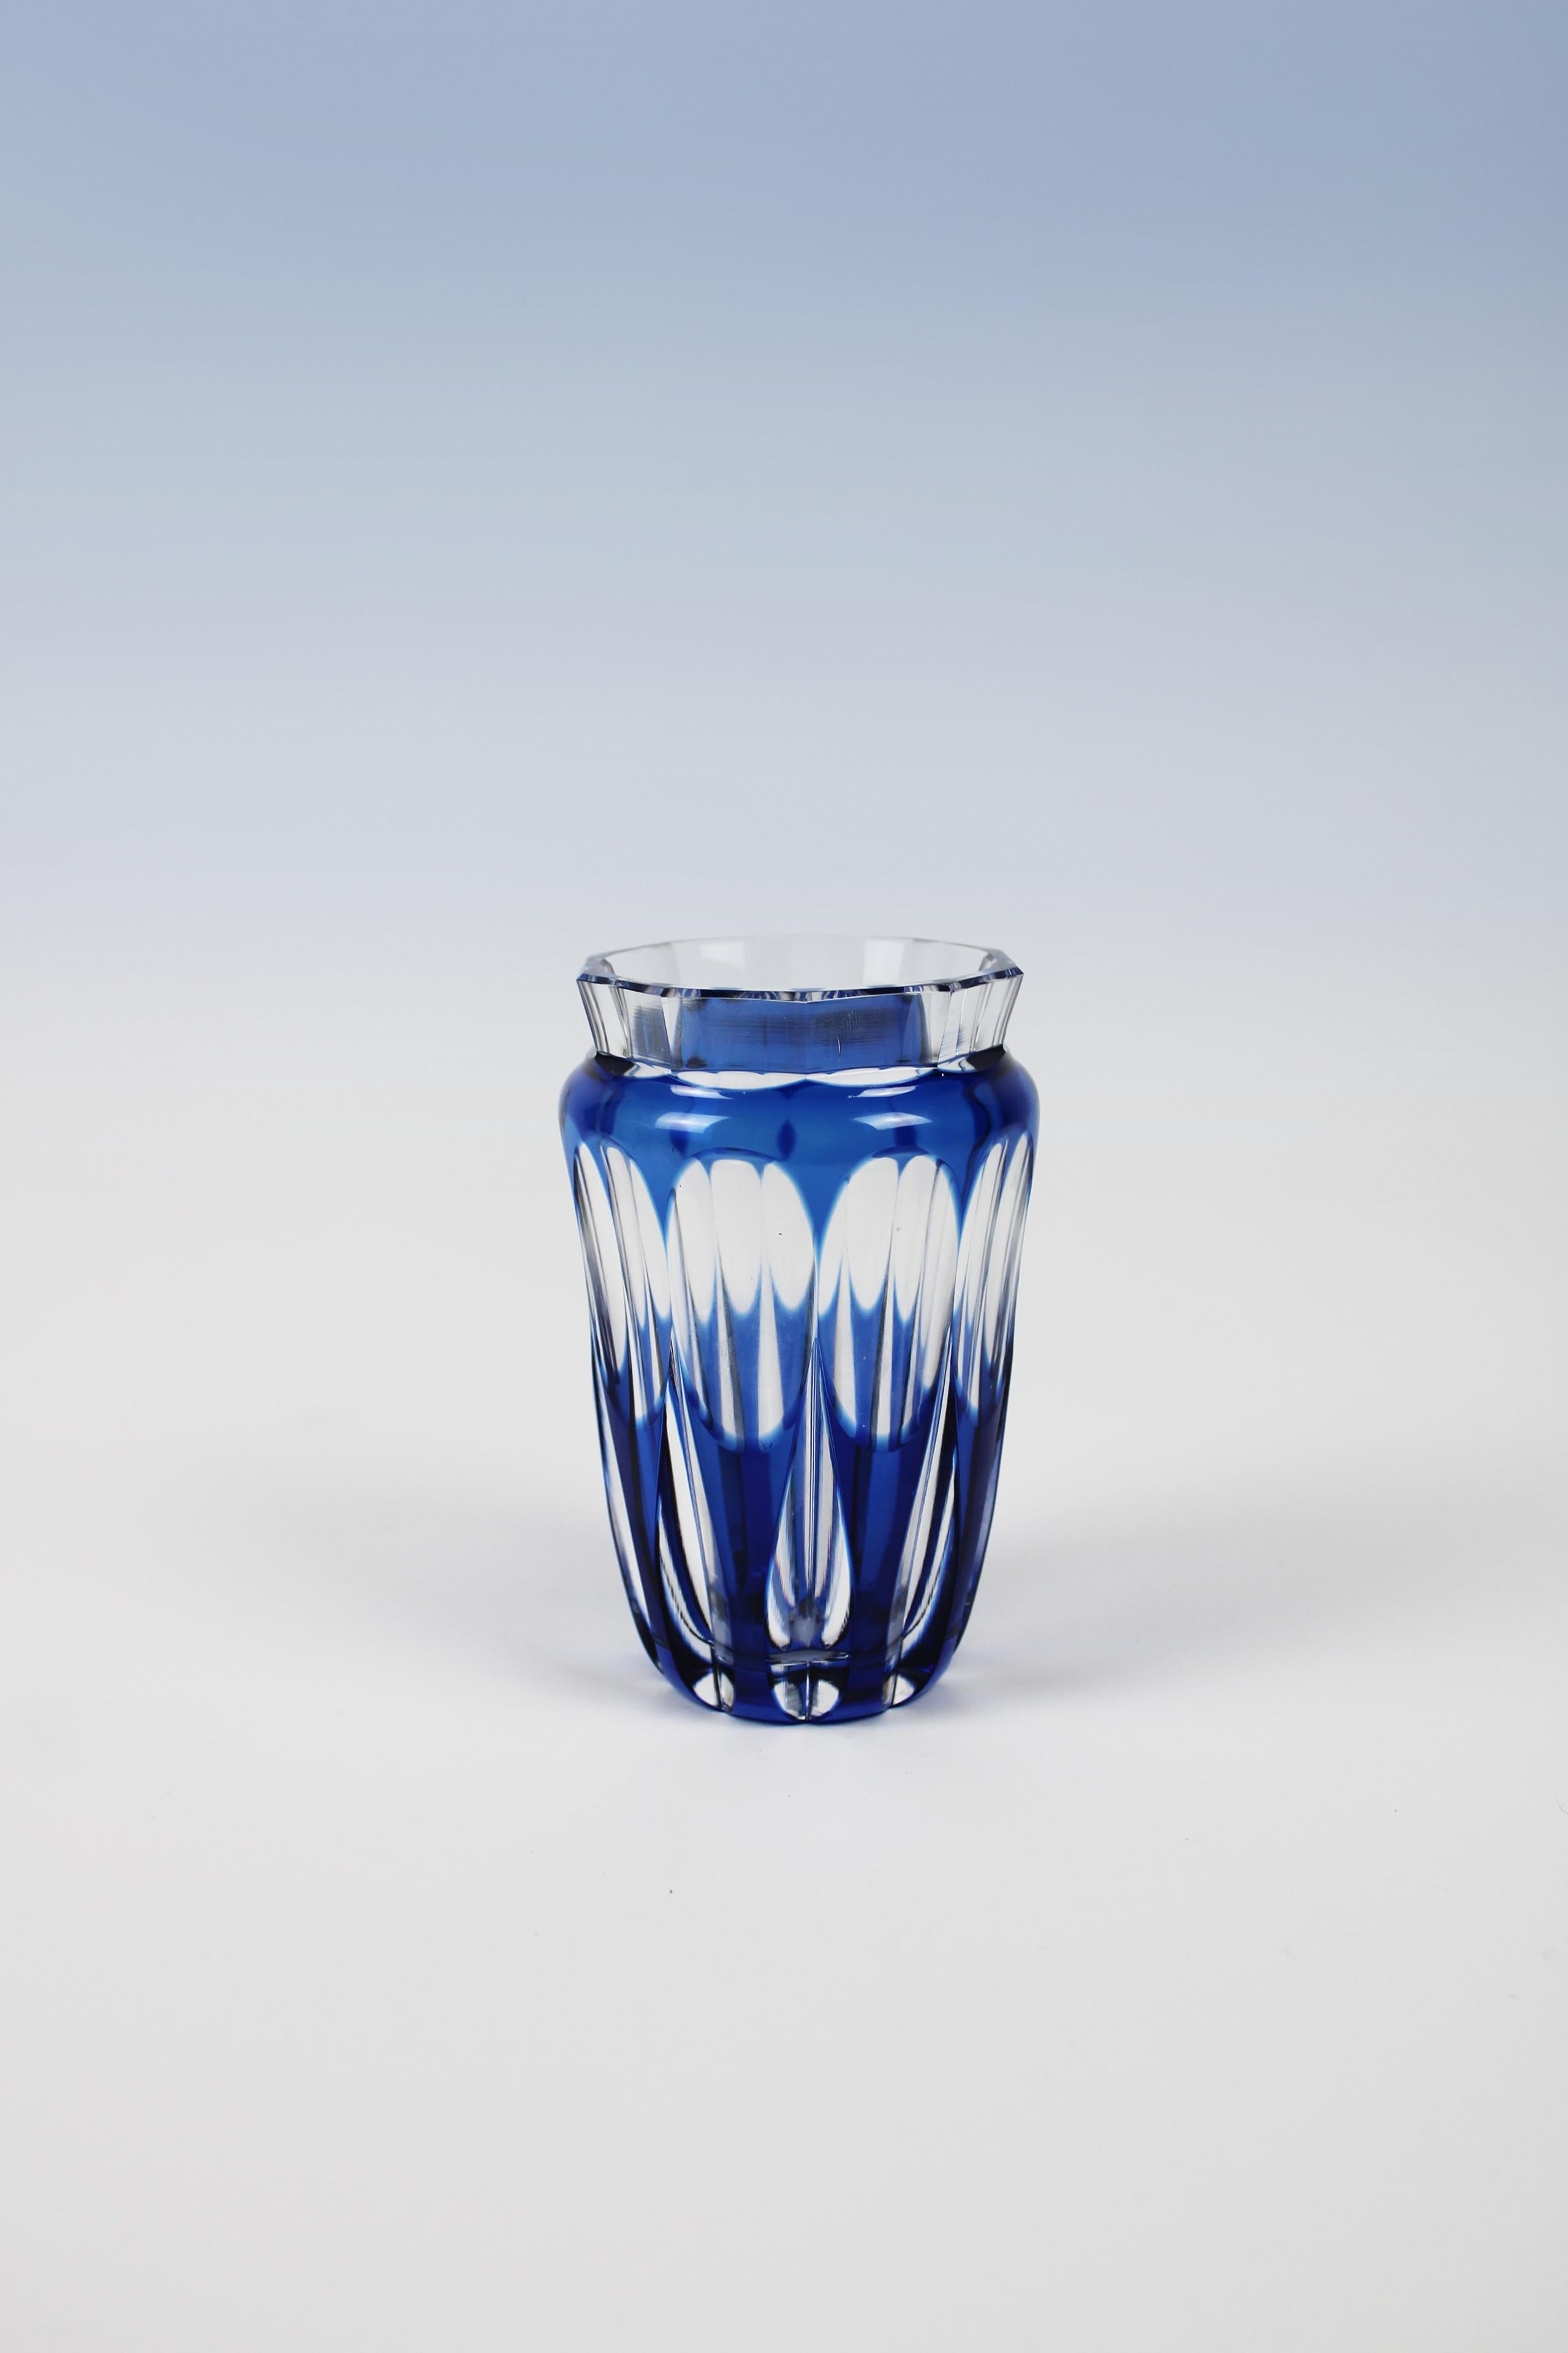 Diese originelle und bezaubernde Vase von Val St. Lambert, einer belgischen Manufaktur, die für ihre Glaswaren bekannt ist, zeigt auch mit dieser blauen Vase, dass sie ihren Namen verdient. Die niedliche Form gebogen kurz mit einem Relief, das